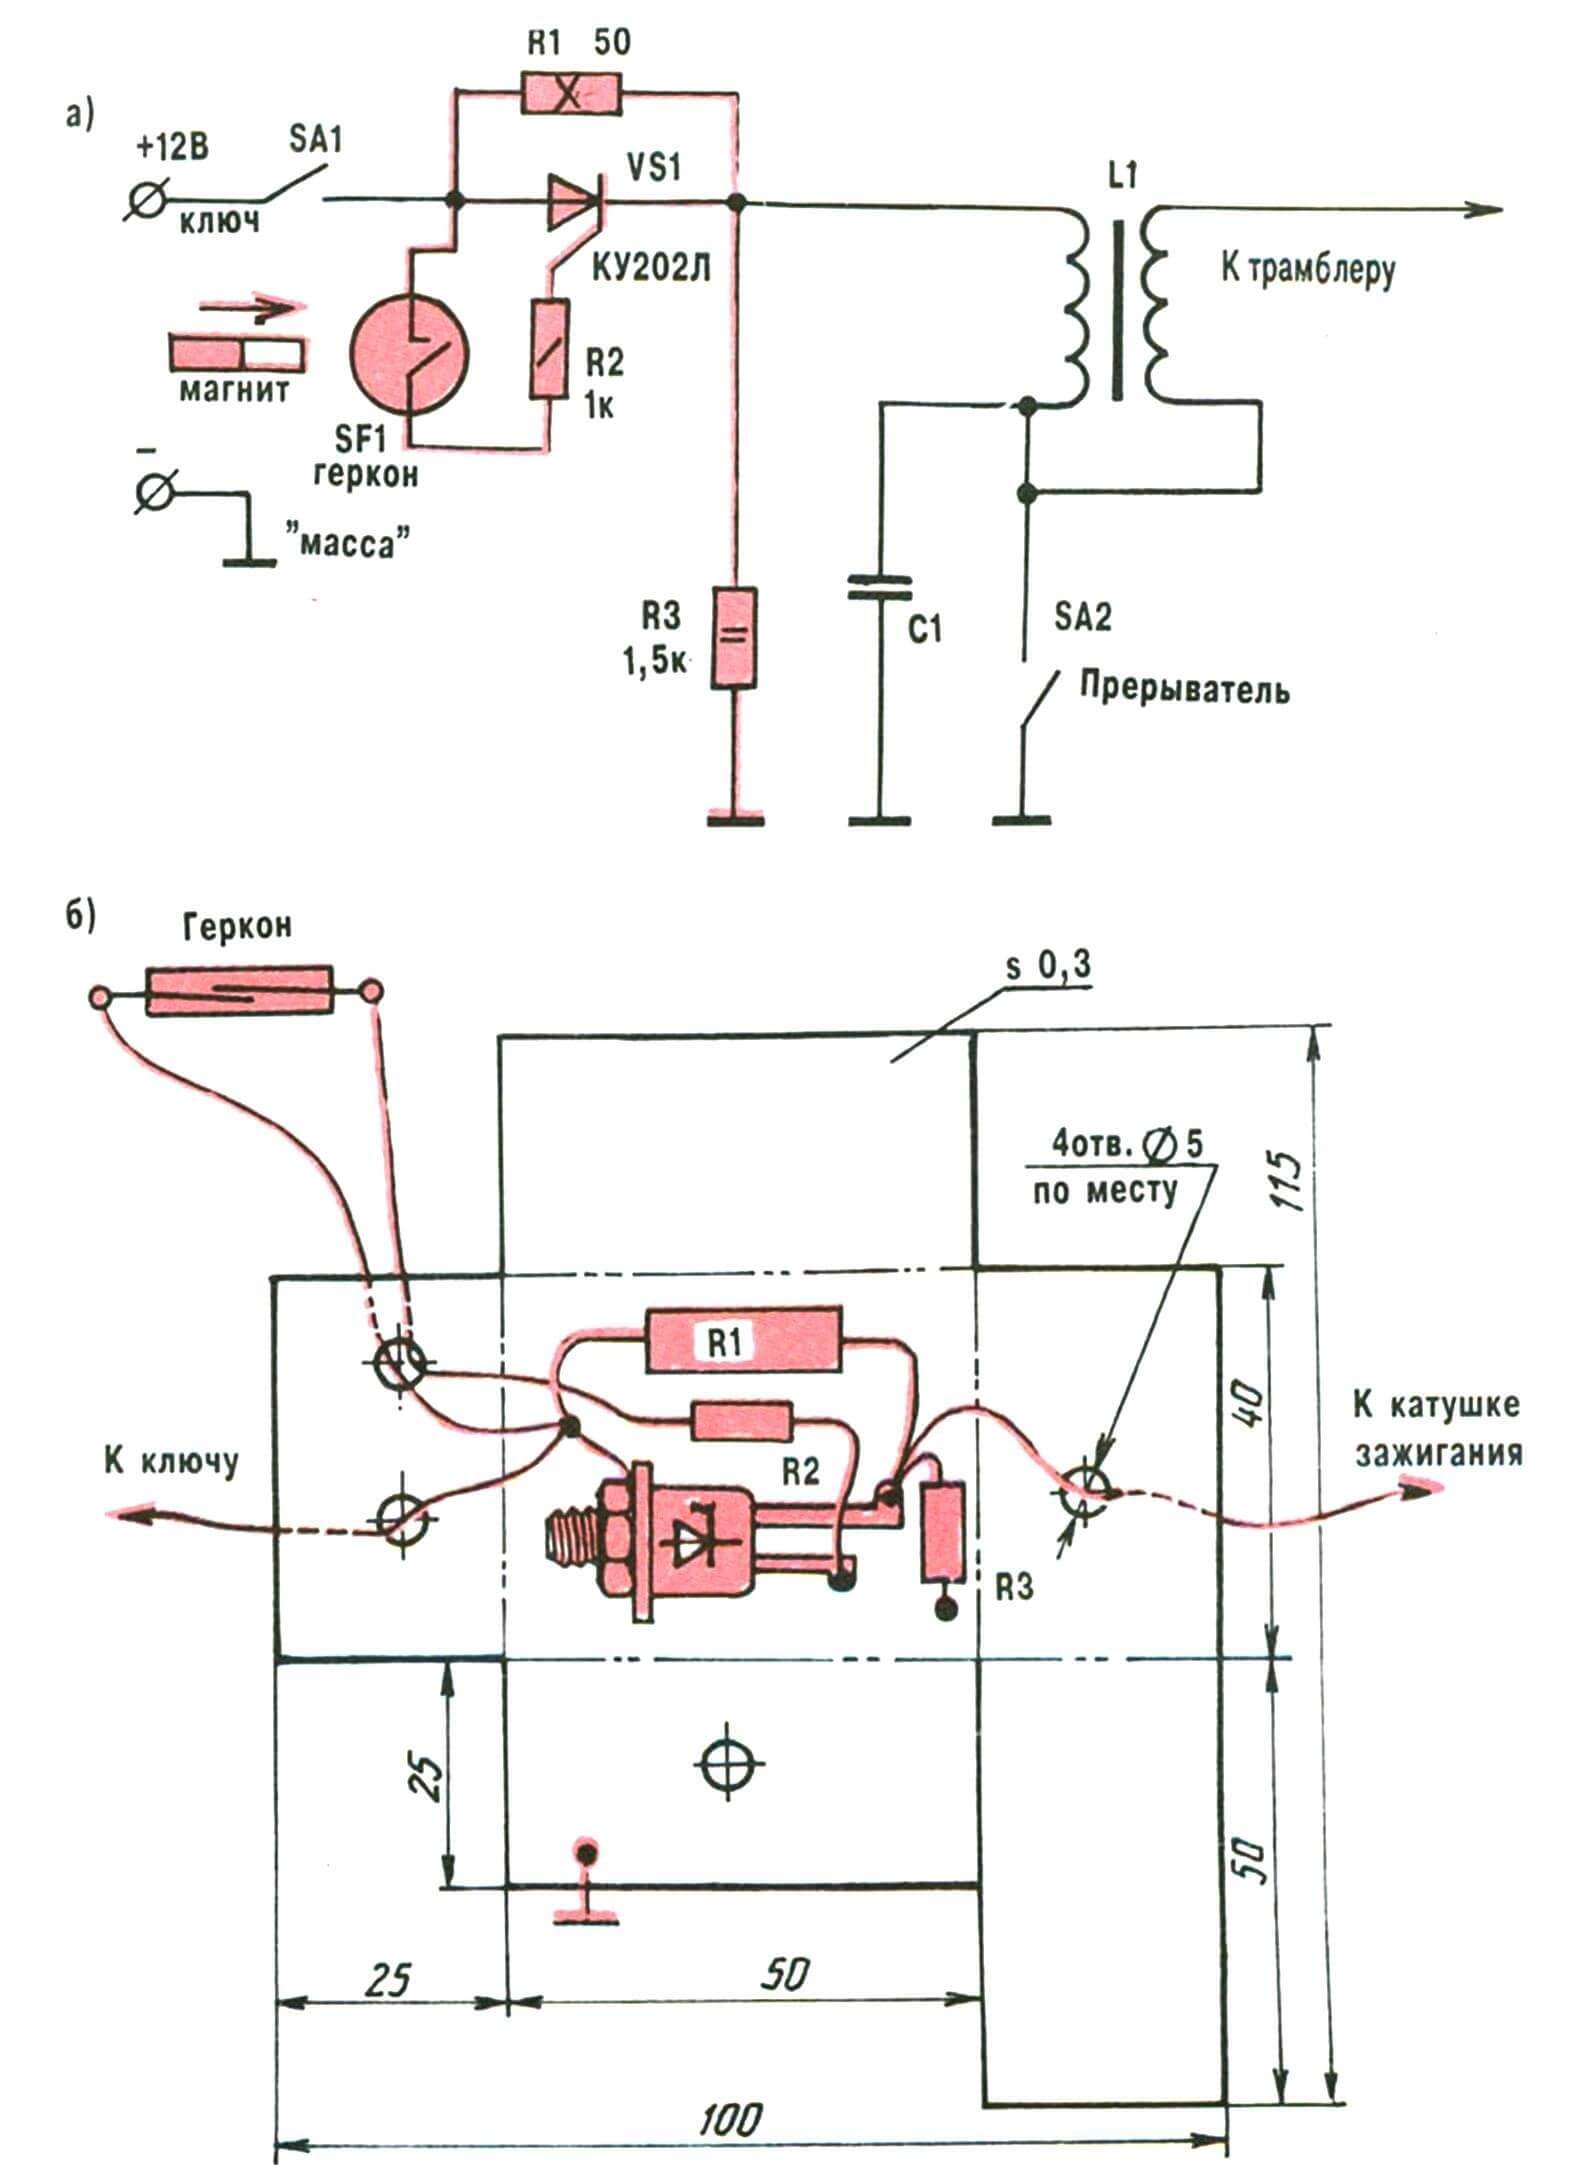 Принципиальная электрическая схема (а) и навесной монтаж (б) противоугонного устройства (контрастным цветом выделены вводимые новшества).